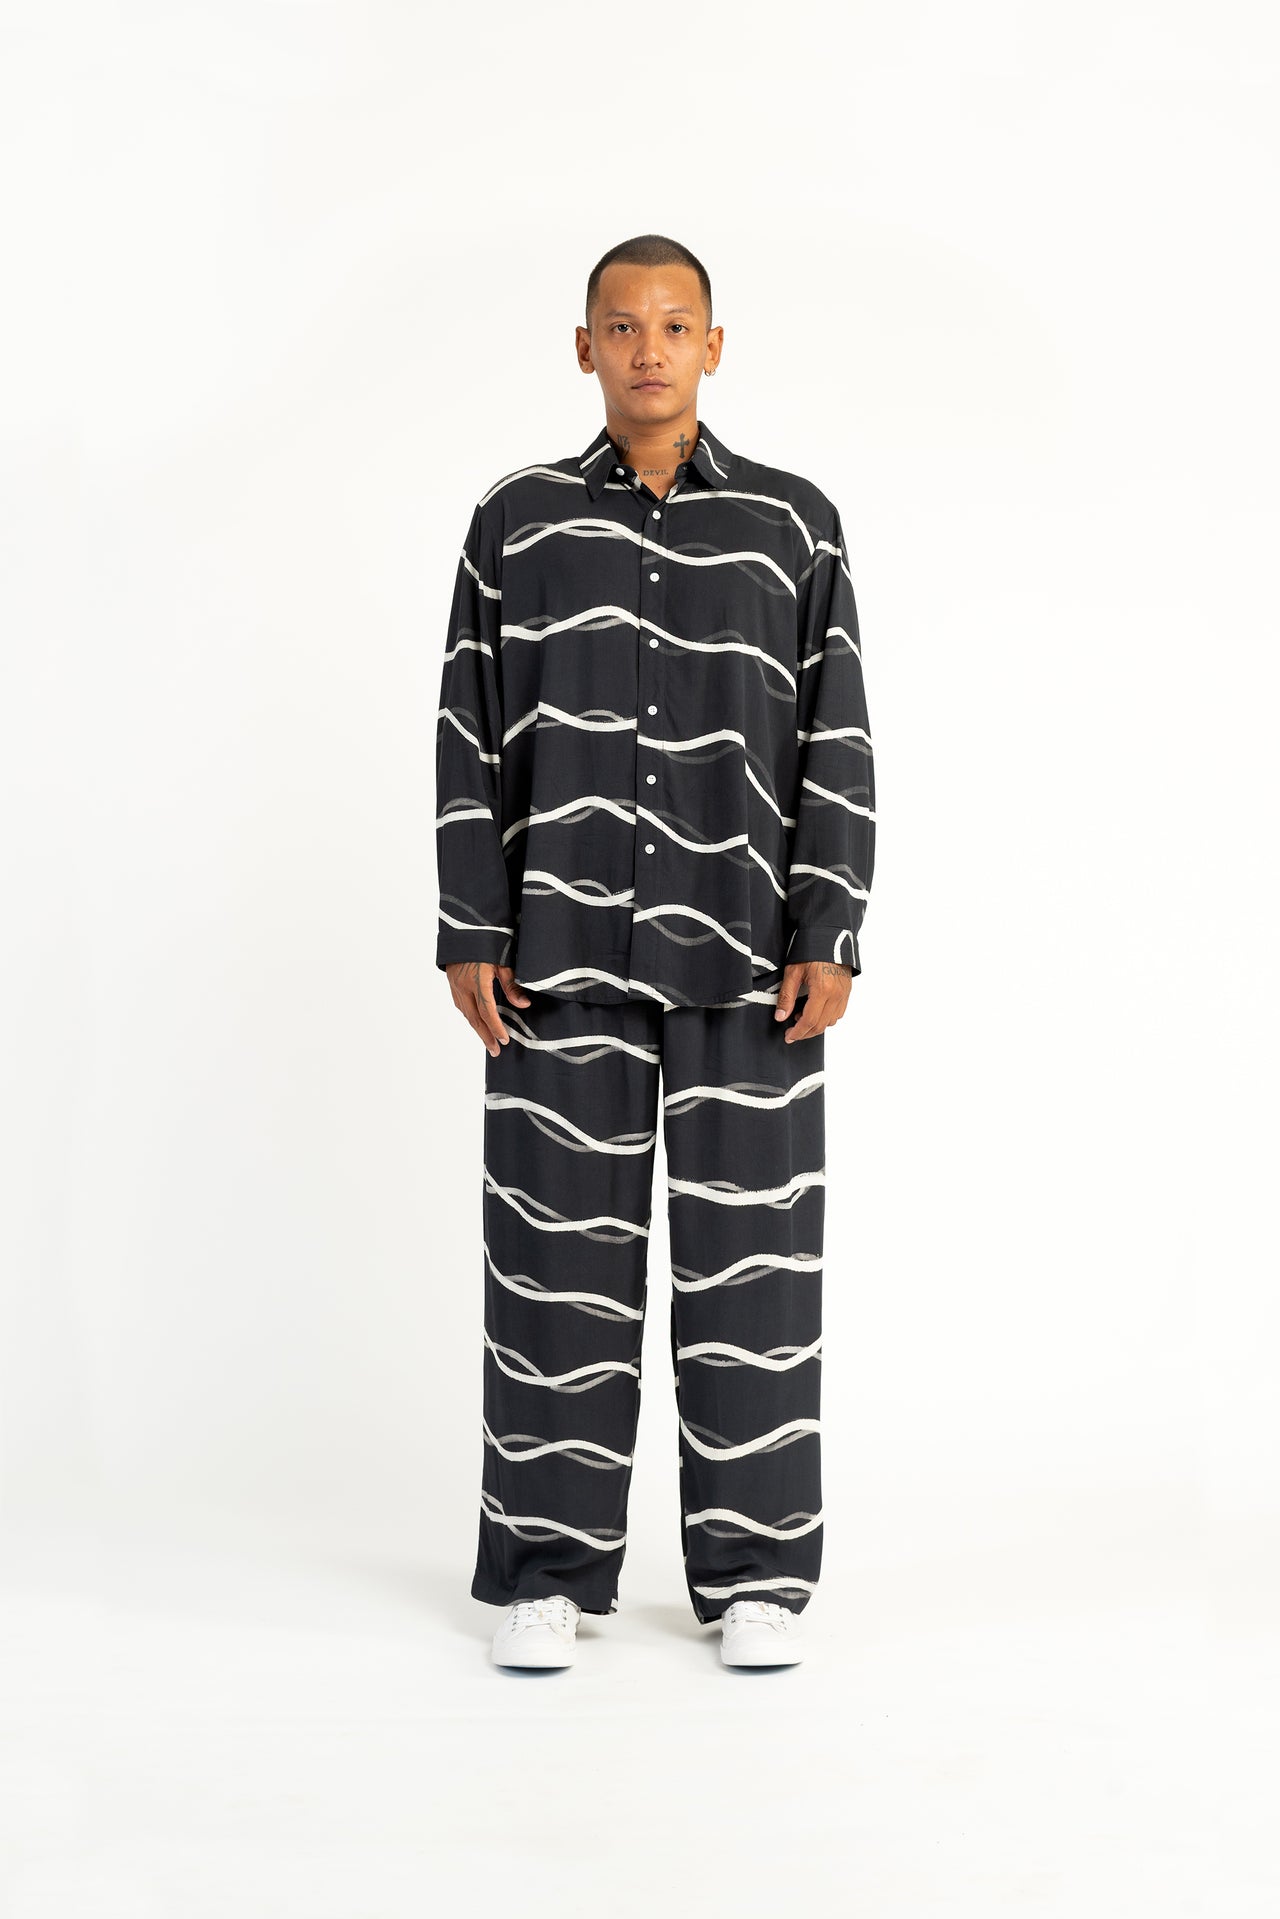 Shoreline Winter Pyjamas